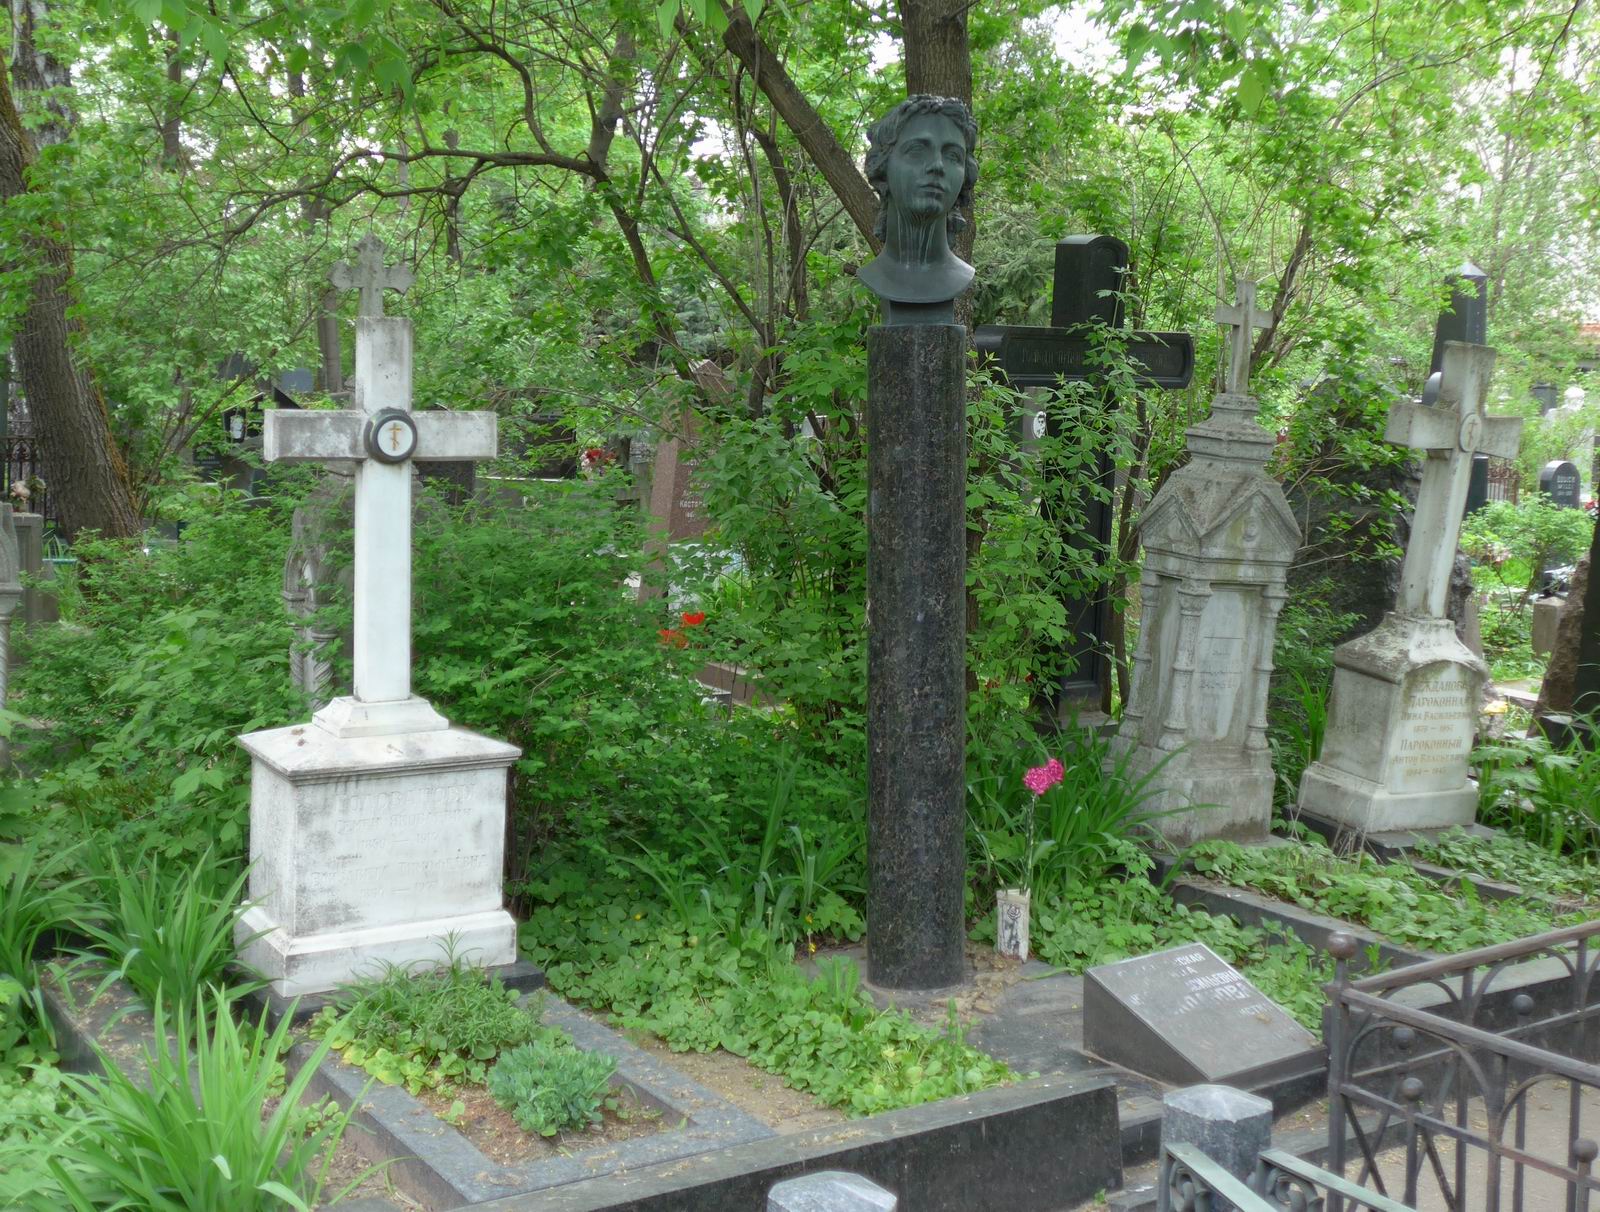 Памятник на могиле Неждановой А.В. (1873–1950), ск. М.Аникушин, арх. Ф.Гепнер, на Новодевичьем кладбище (3–23–2). Нажмите левую кнопку мыши чтобы увидеть фрагмент памятника крупно.